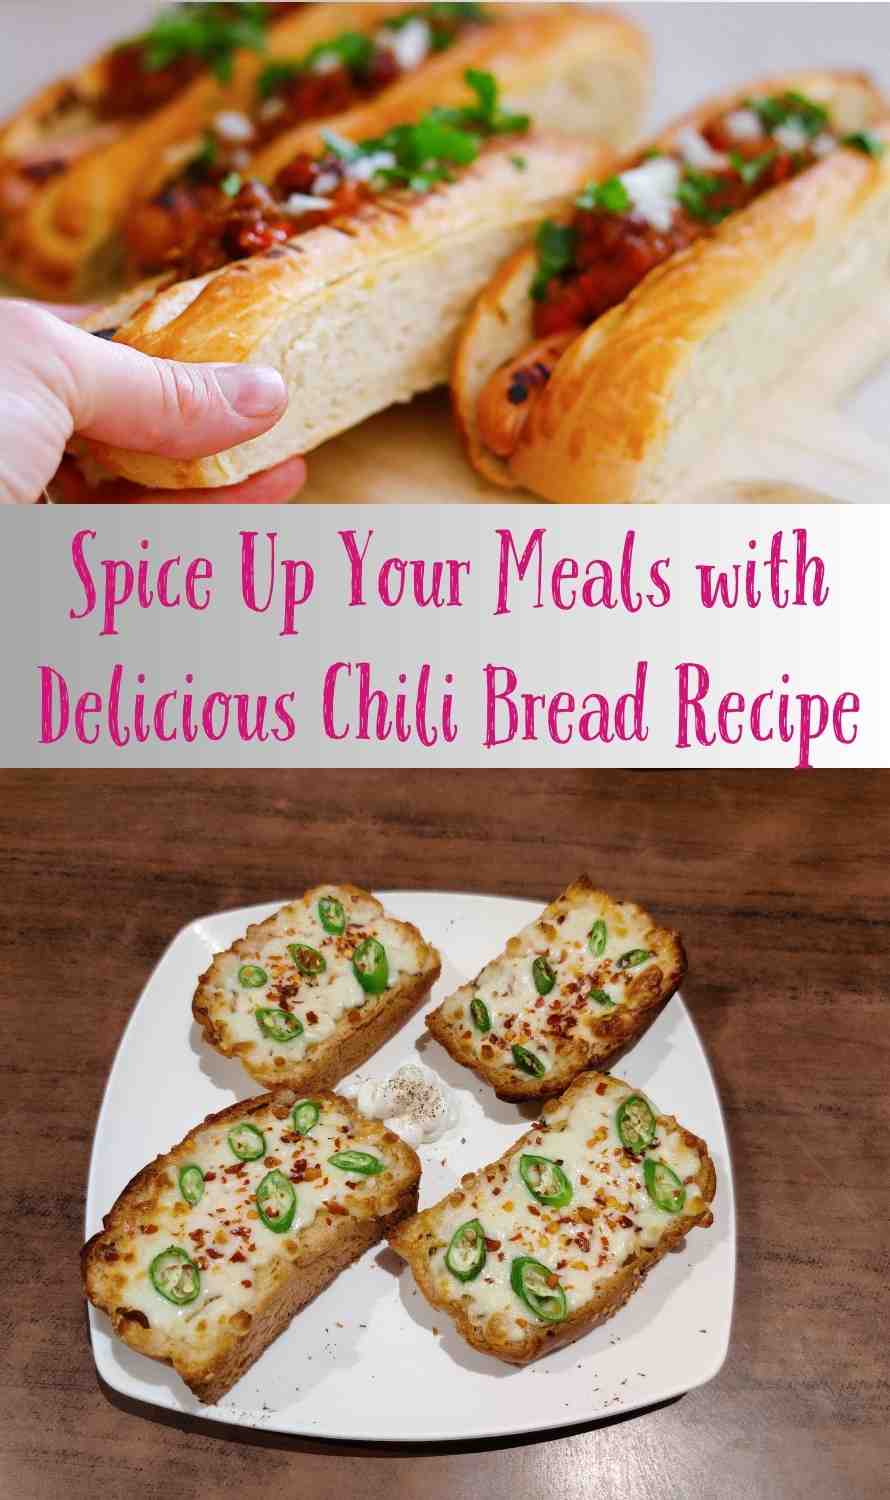 Chili Bread Recipe